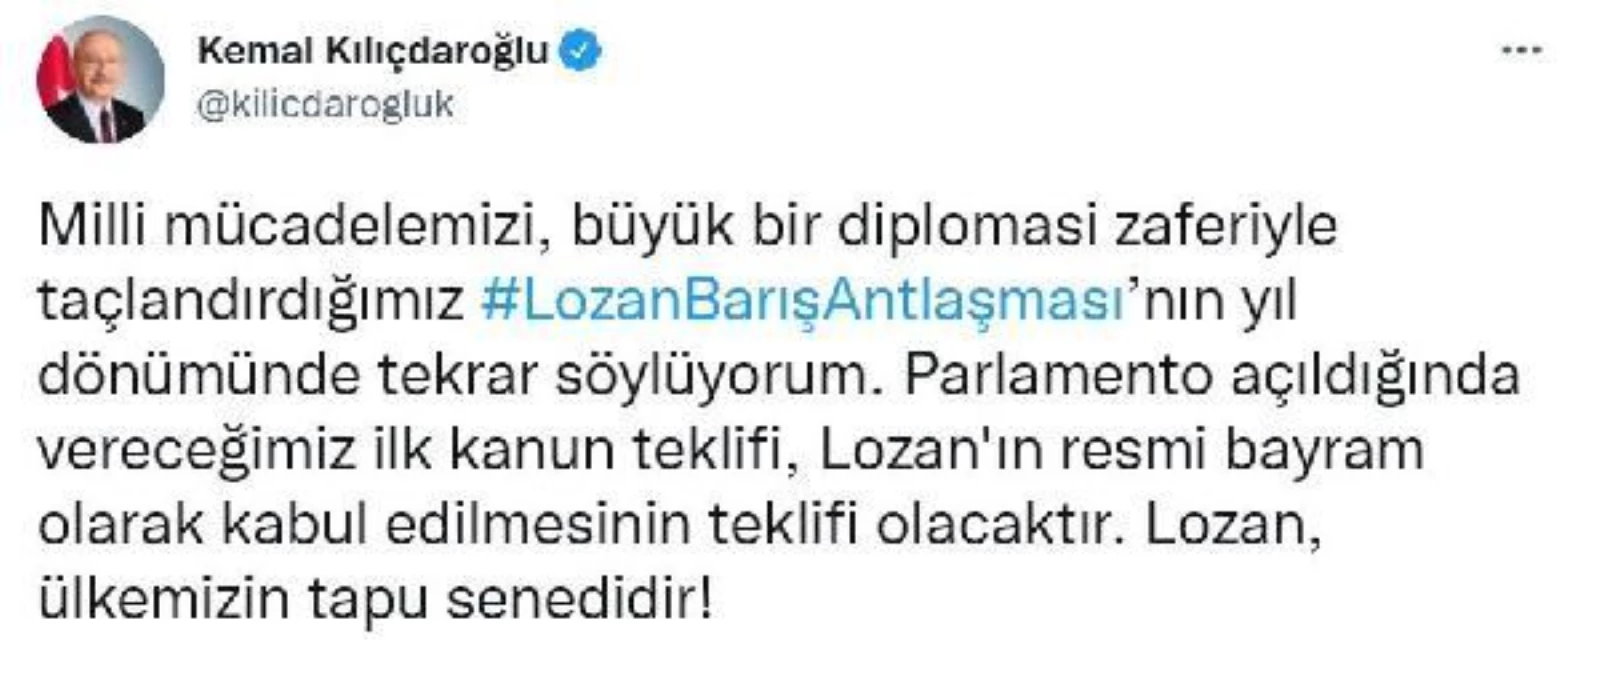 CHP Lideri Kemal Kılıçdaroğlu: "Lozan Ülkemizin Tapu Senedidir"